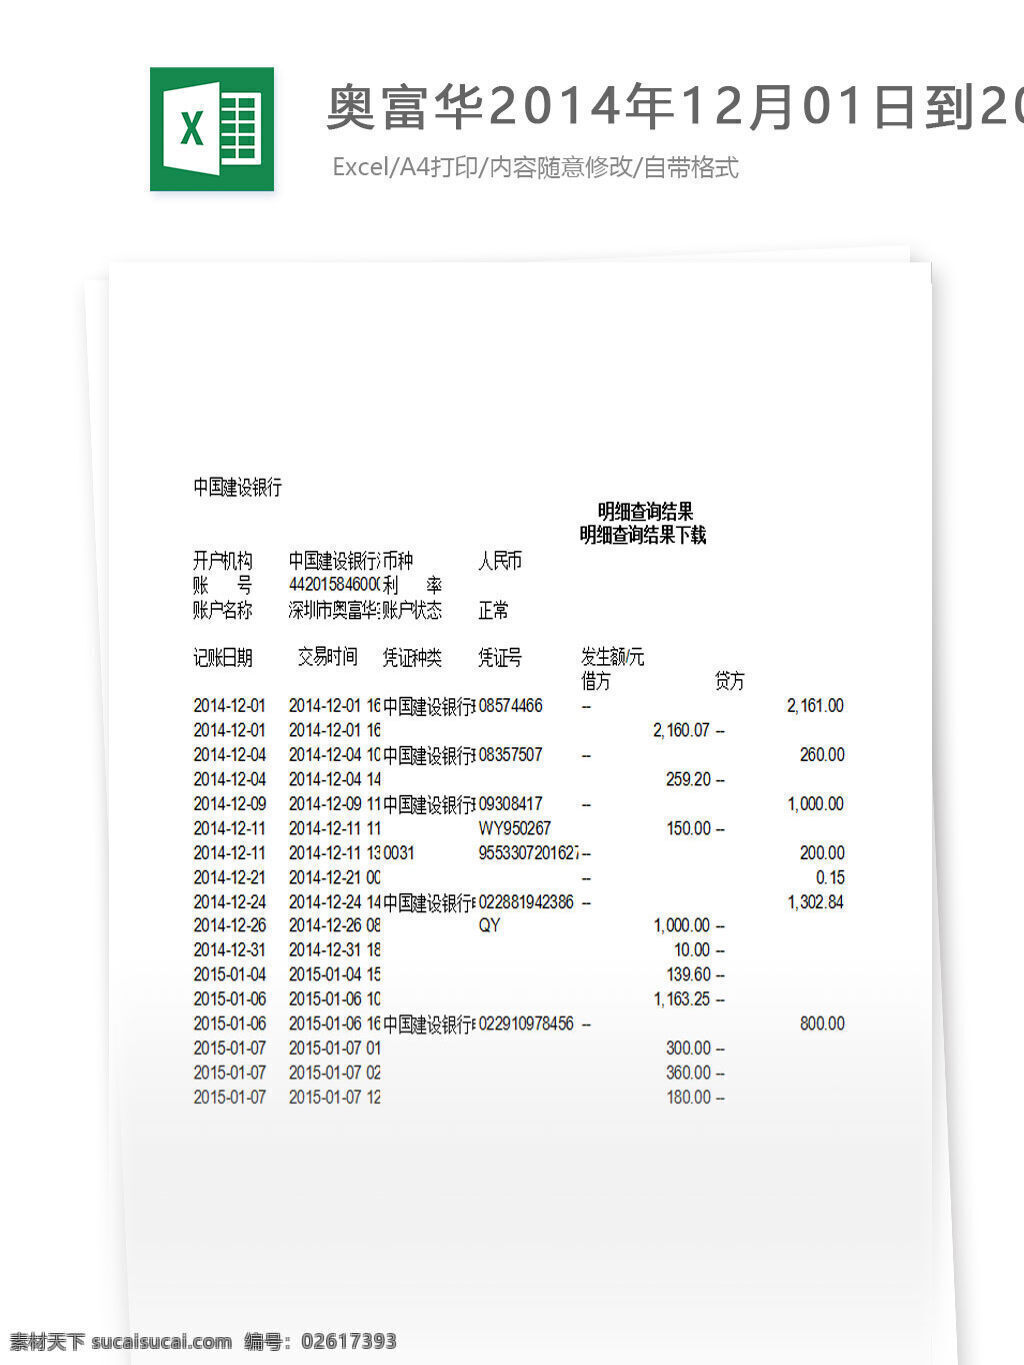 奥 富华 2014 年 月 日到 2015 日 银行 对账单 excel 表格 表格模板 表格设计 图表